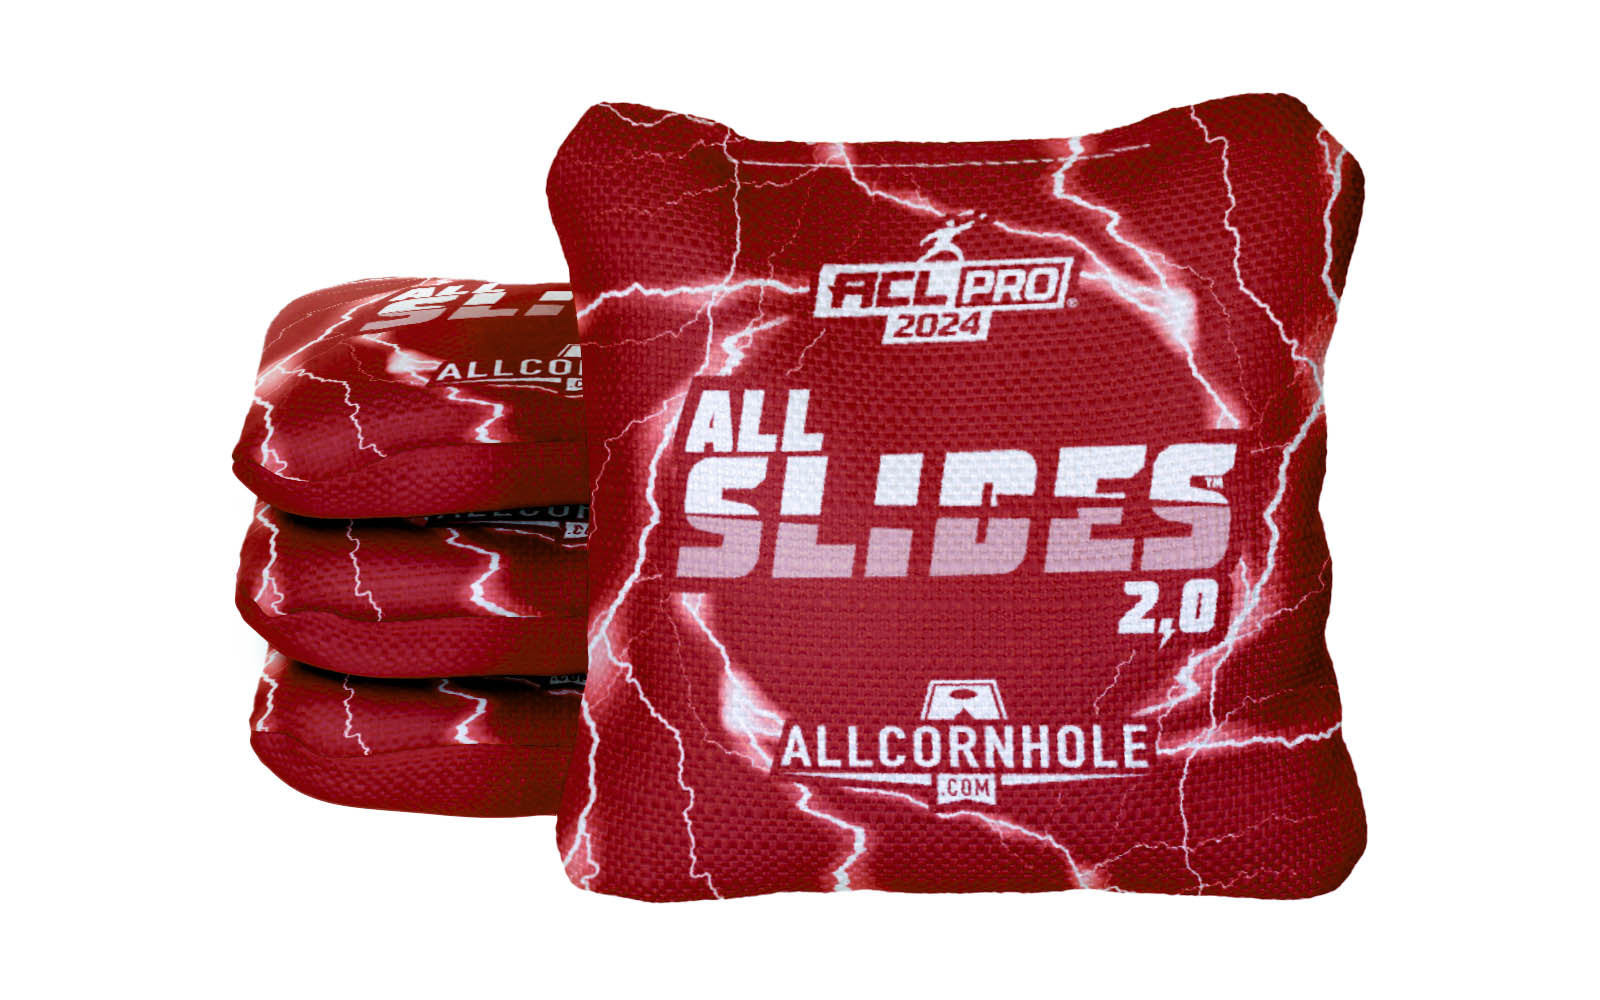 Officially Licensed Collegiate Cornhole Bags - AllCornhole All-Slide 2.0 - Set of 4 - University of Nebraska